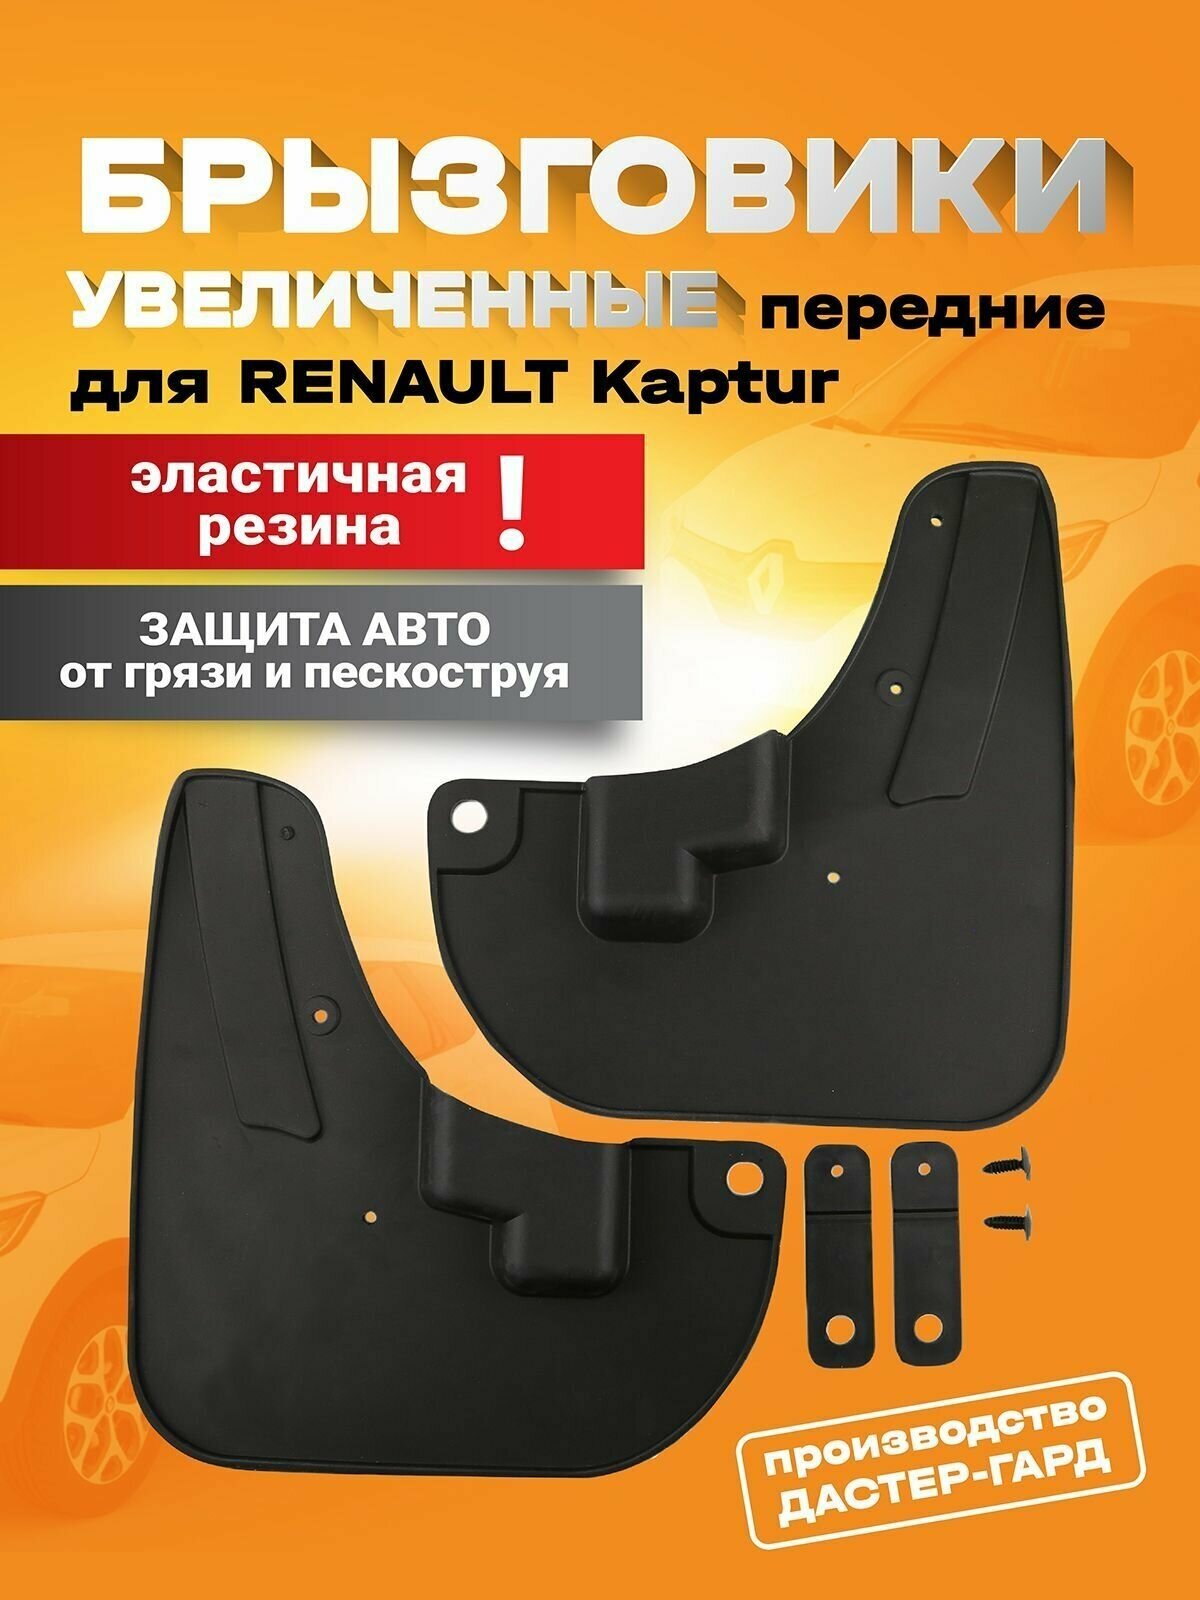 Брызговики передние увеличенные резиновые Рено Каптур (включая рестайлинг 2021)/ брызговики резиновые Renault Kaptur